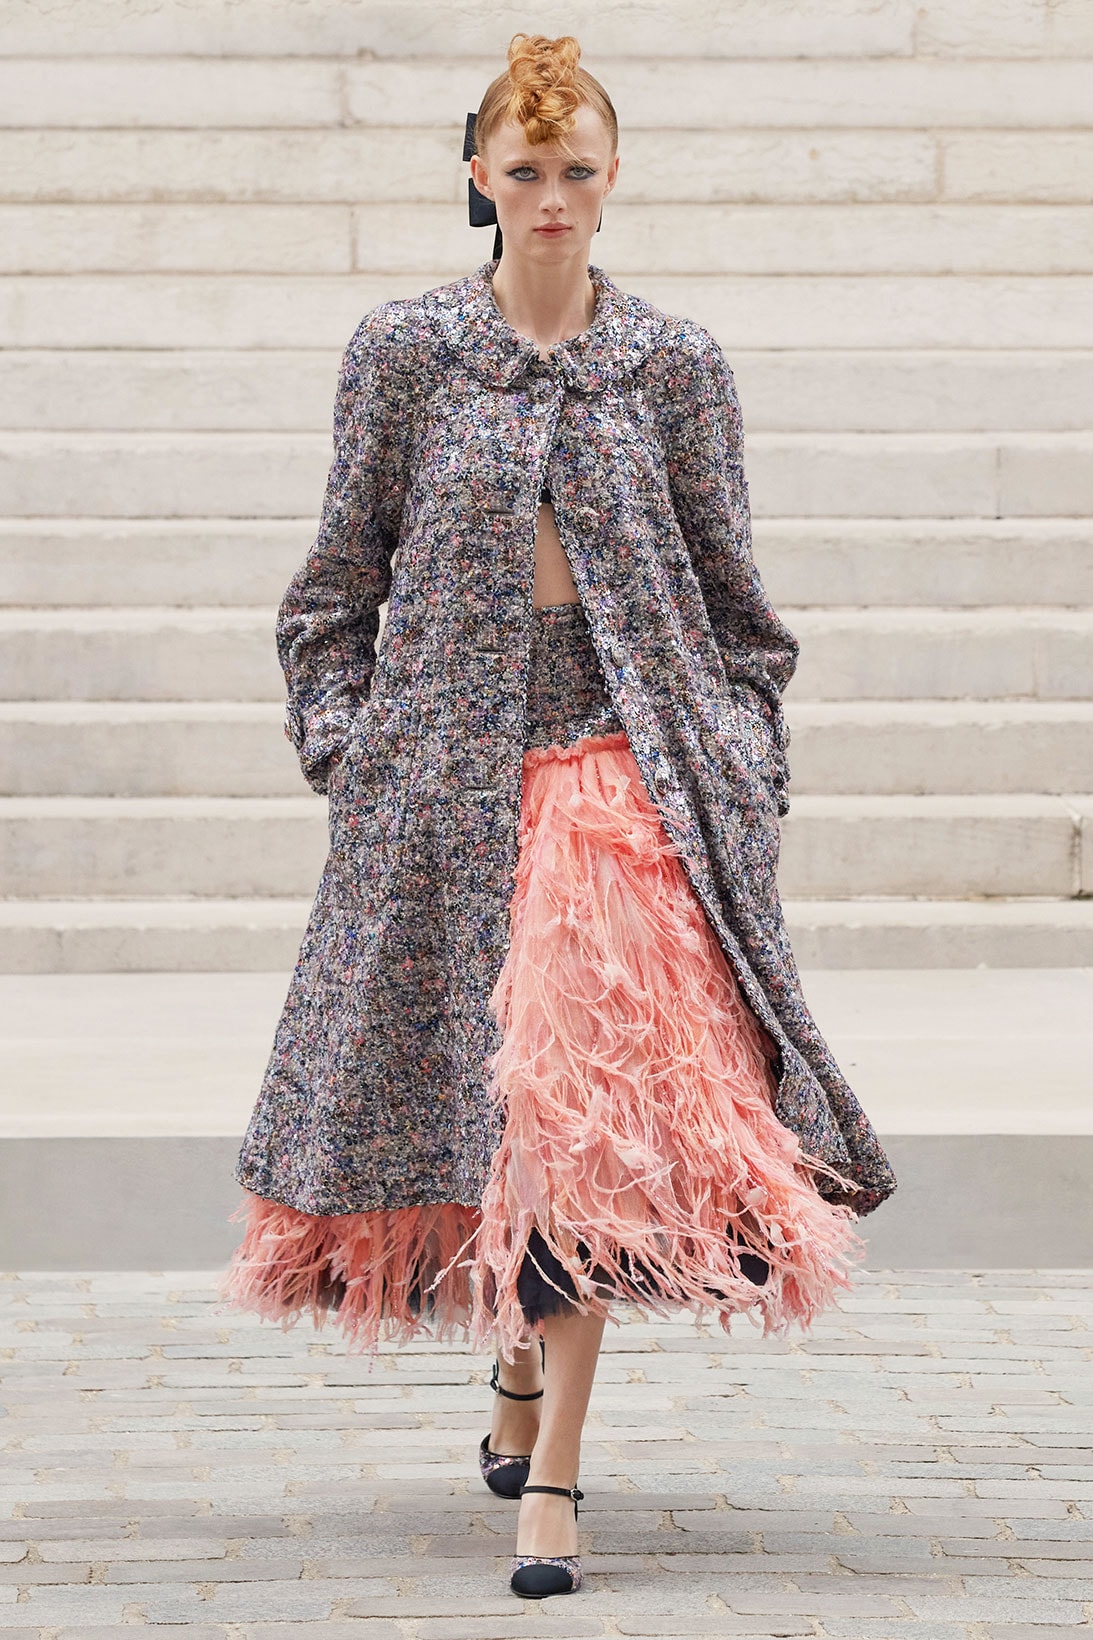 Tweed Still Rules at Chanel - V Magazine